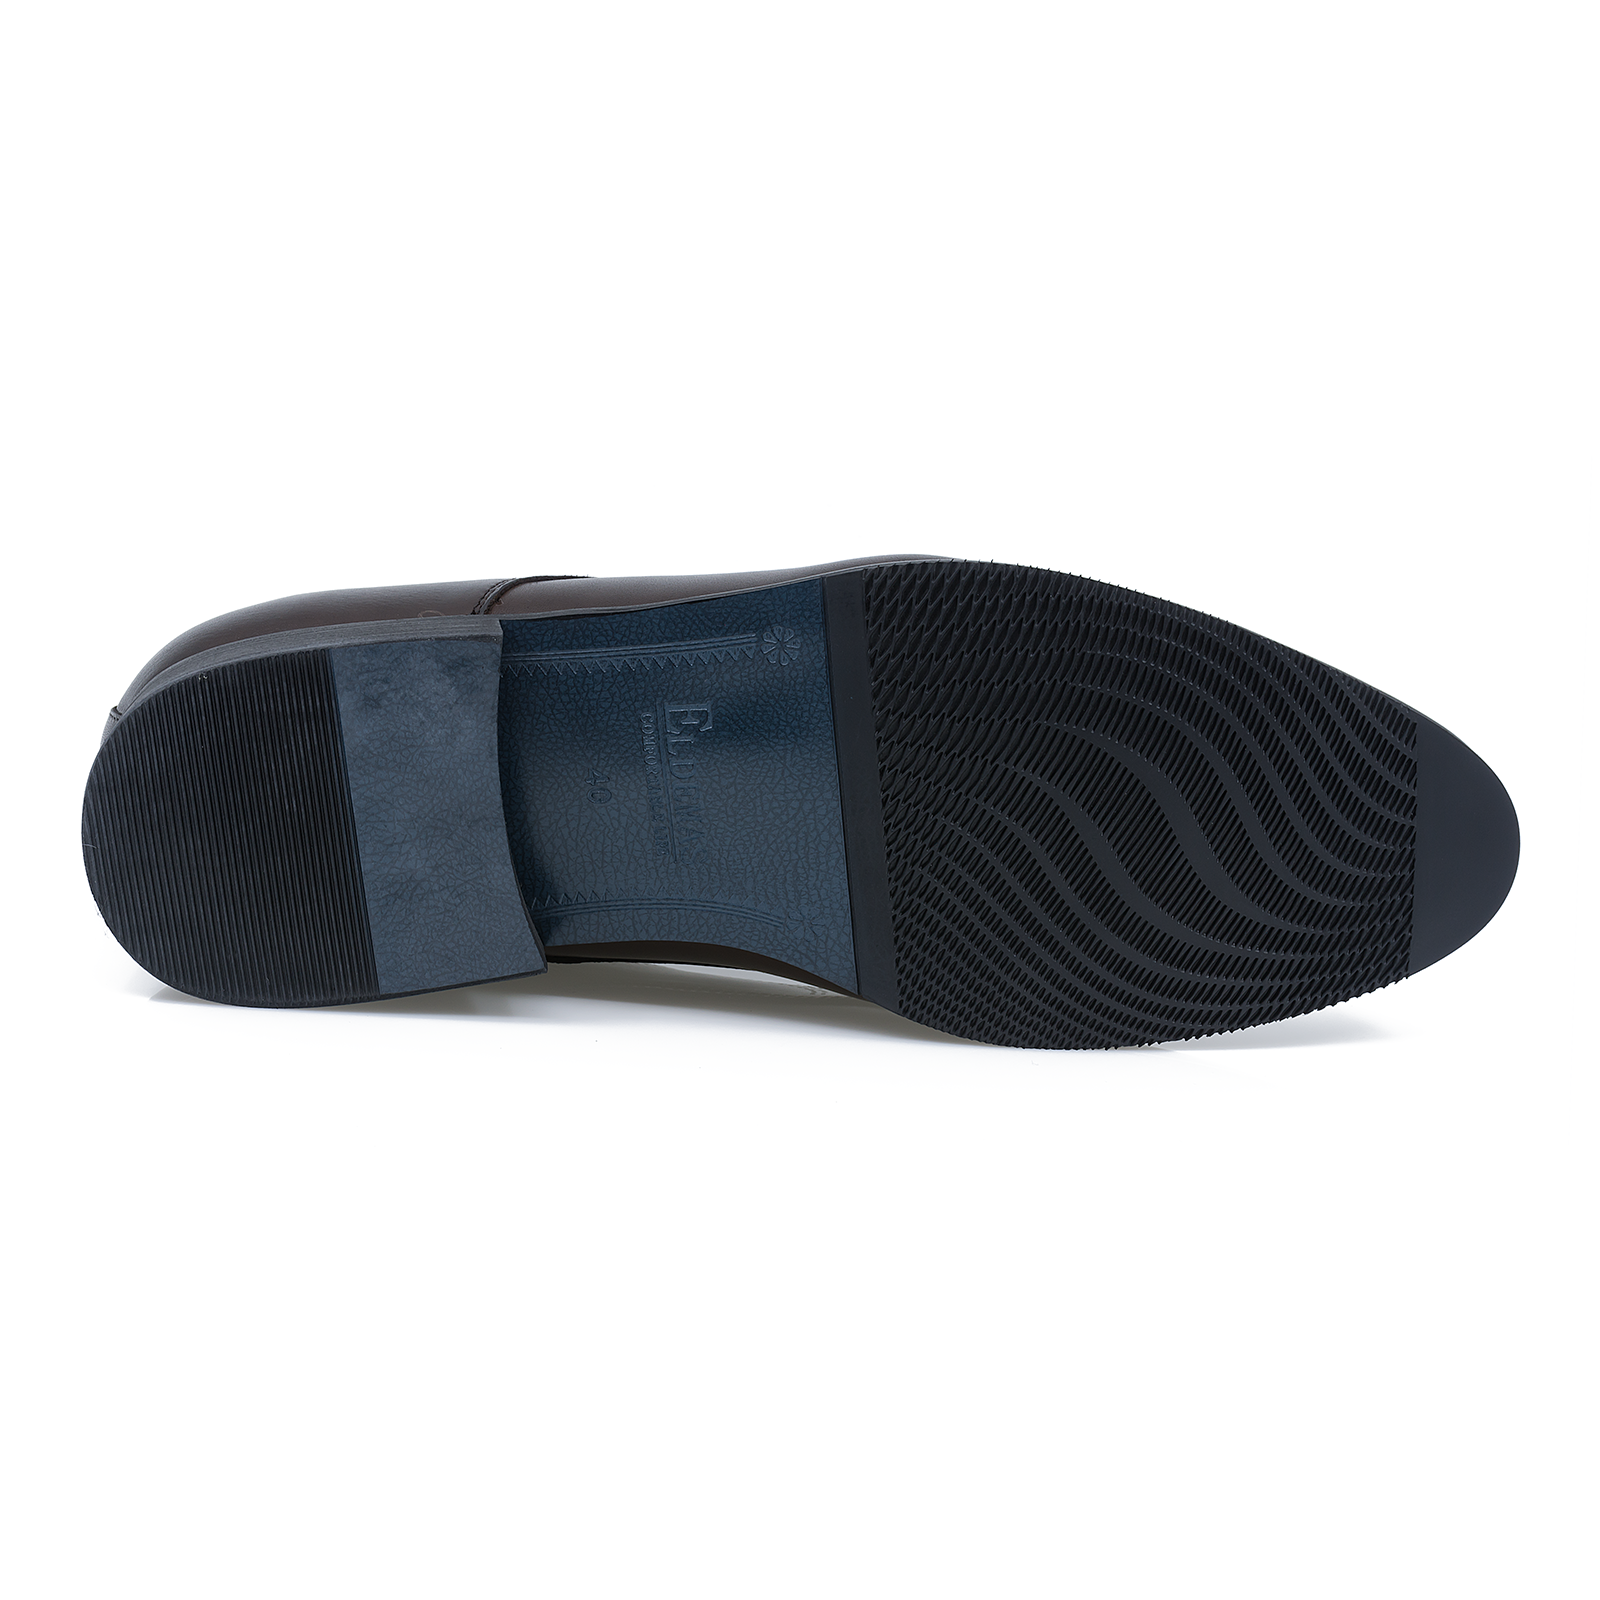 Pantofi-barbati-ELDEMAS-F4155-362-eleganti-piele-naturala-maro-nouamoda.ro-4